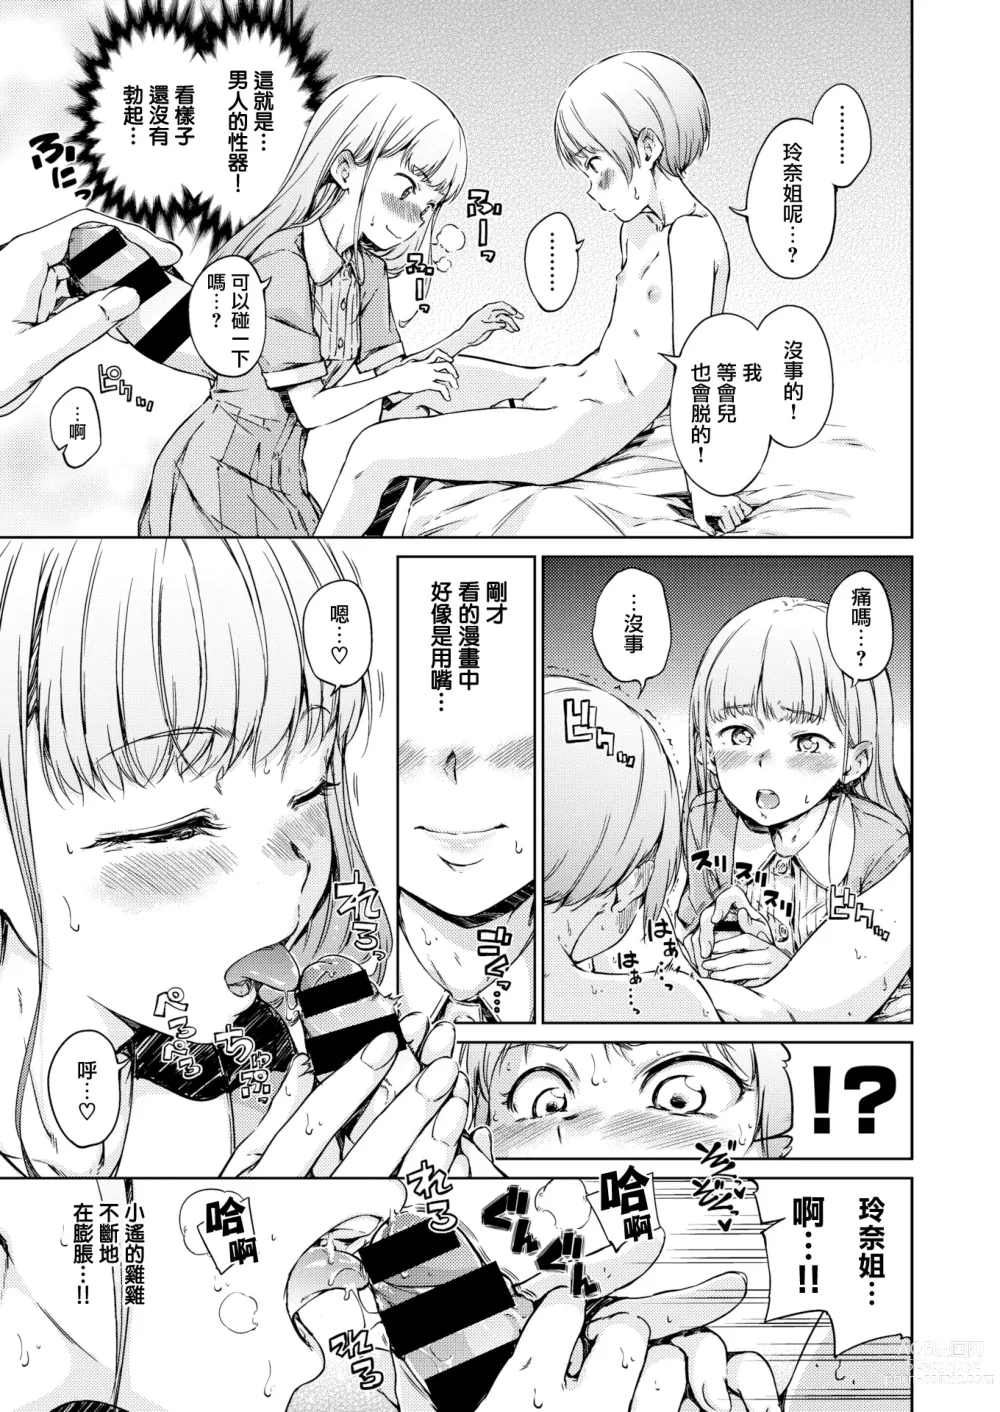 Page 6 of manga Chuu ni Uita Mama no Kokoro